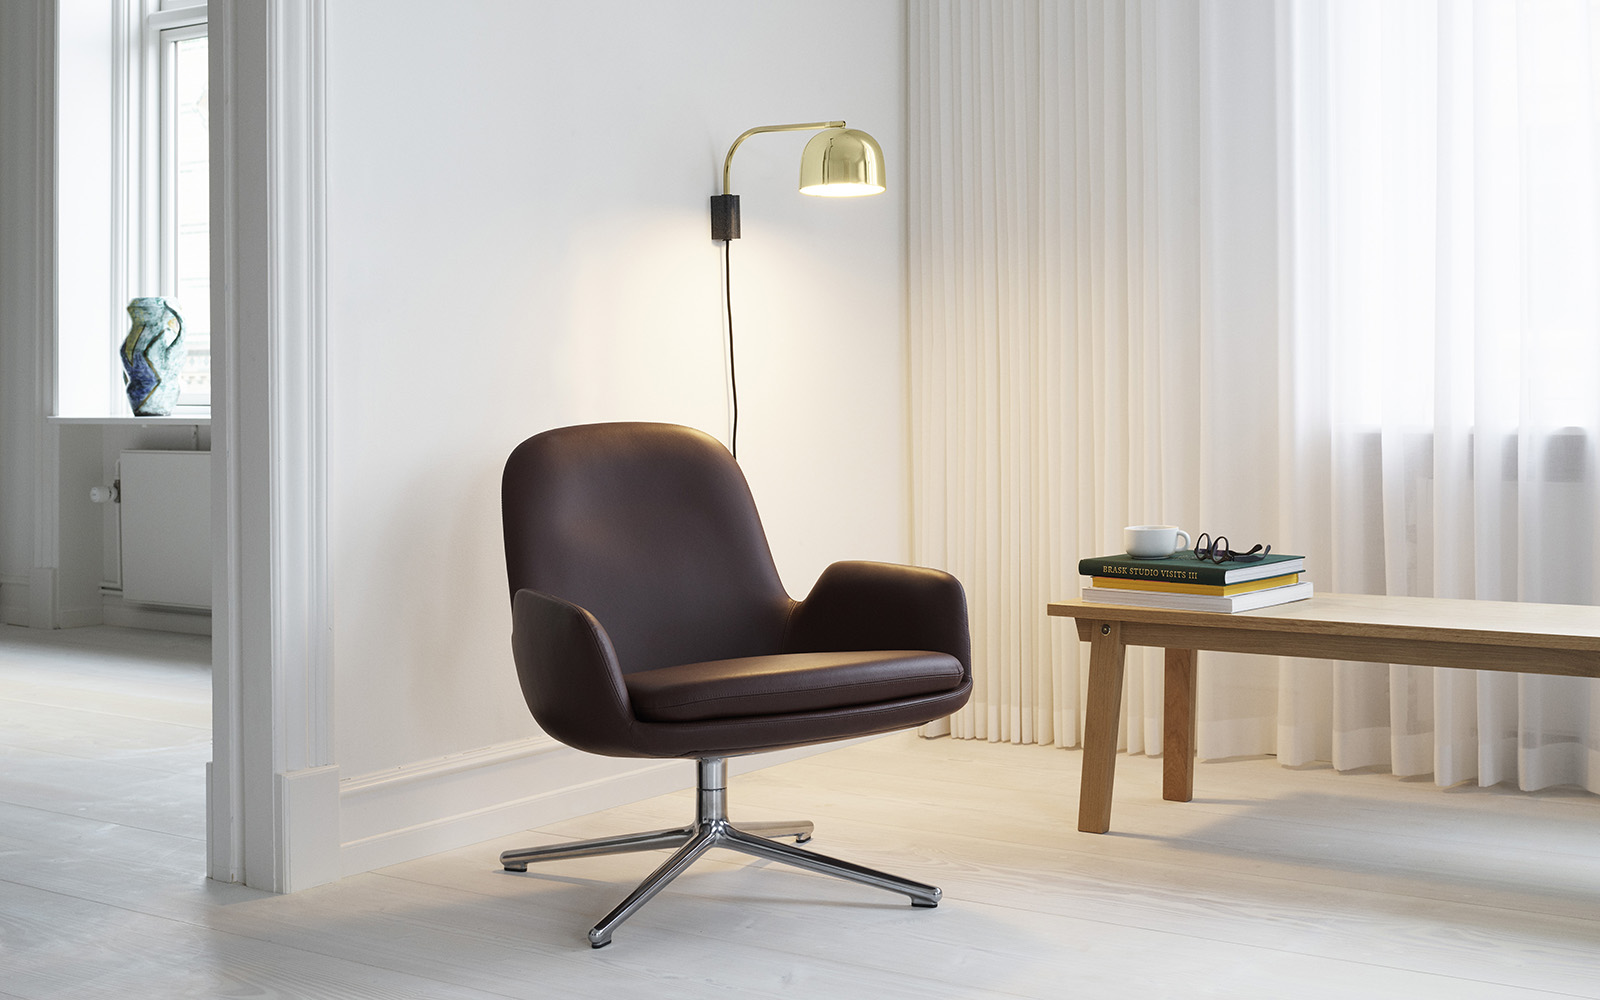 sector triatlon Ontoegankelijk Era Lounge Chair - A Modern and Classic Lounge Chair | Normann Copenhagen